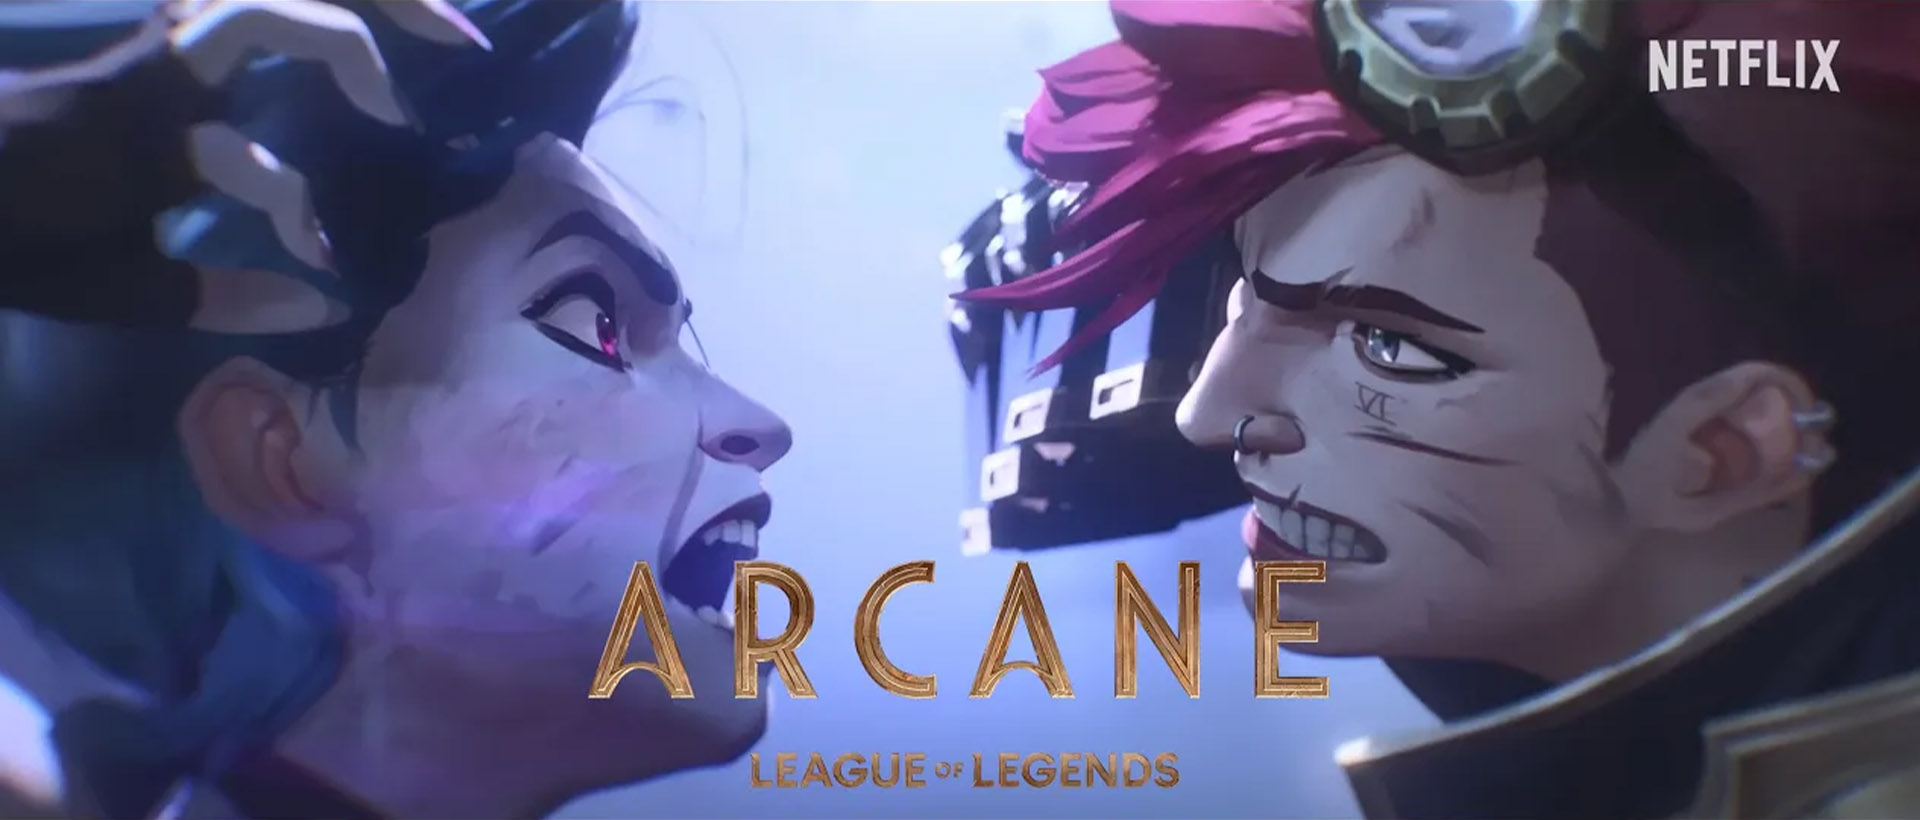 arcane season 2 full trailer banner